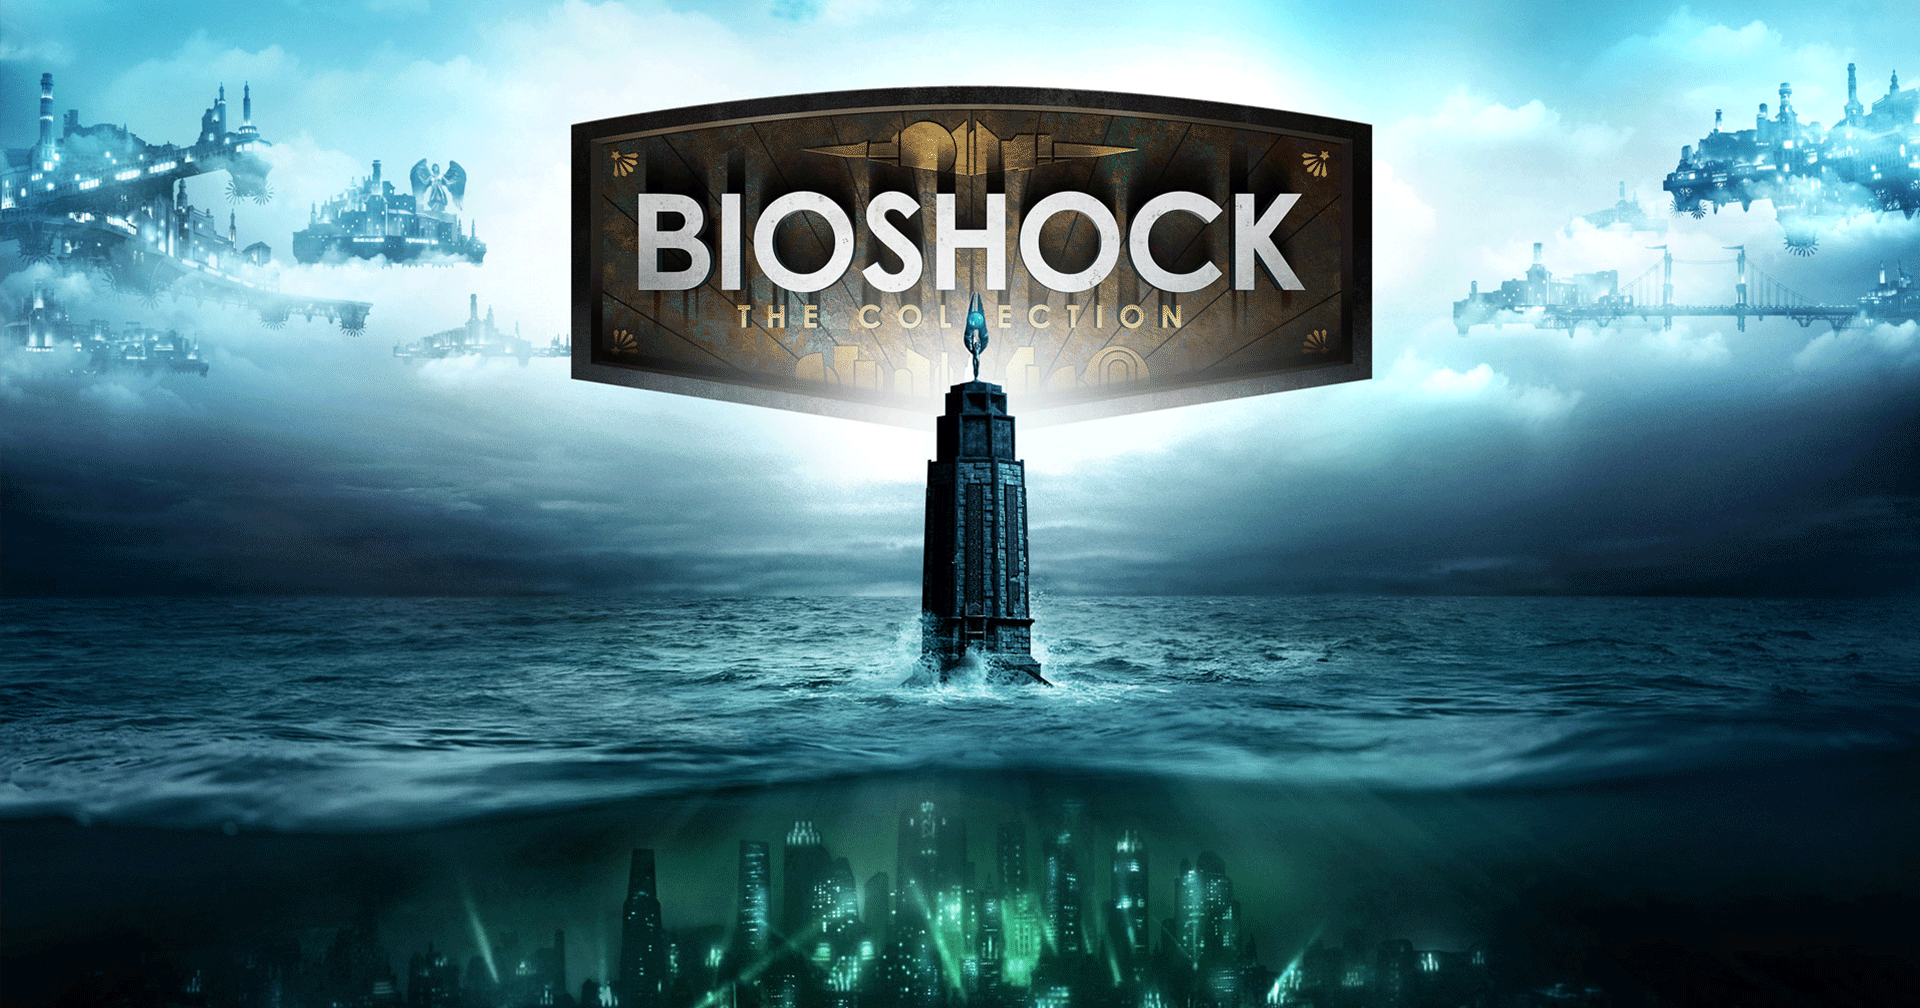 BioShock ทุกภาค แจกฟรีบน Epic Store แล้ววันนี้